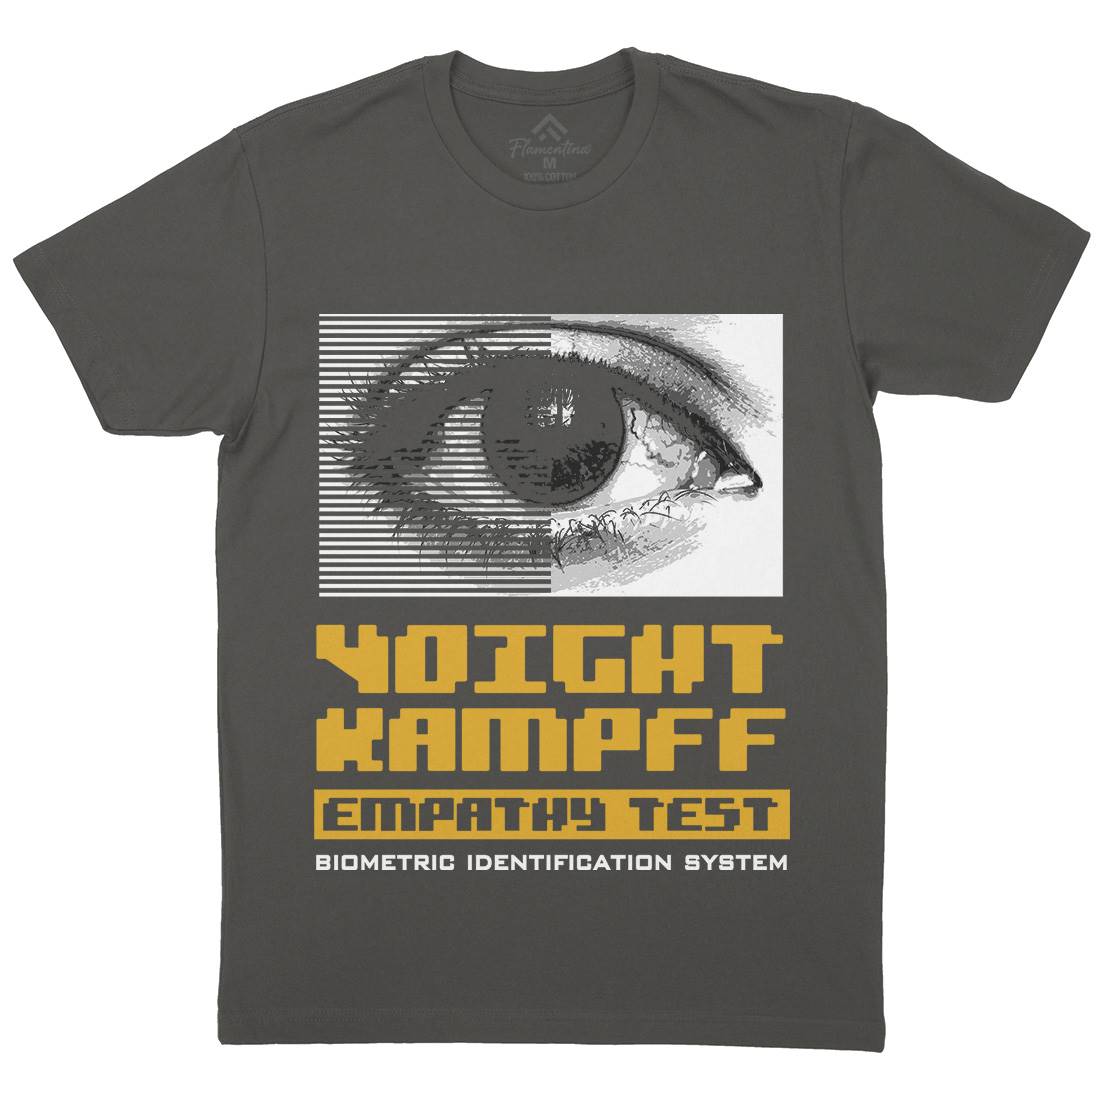 Voight Kampff Mens Organic Crew Neck T-Shirt Space D405